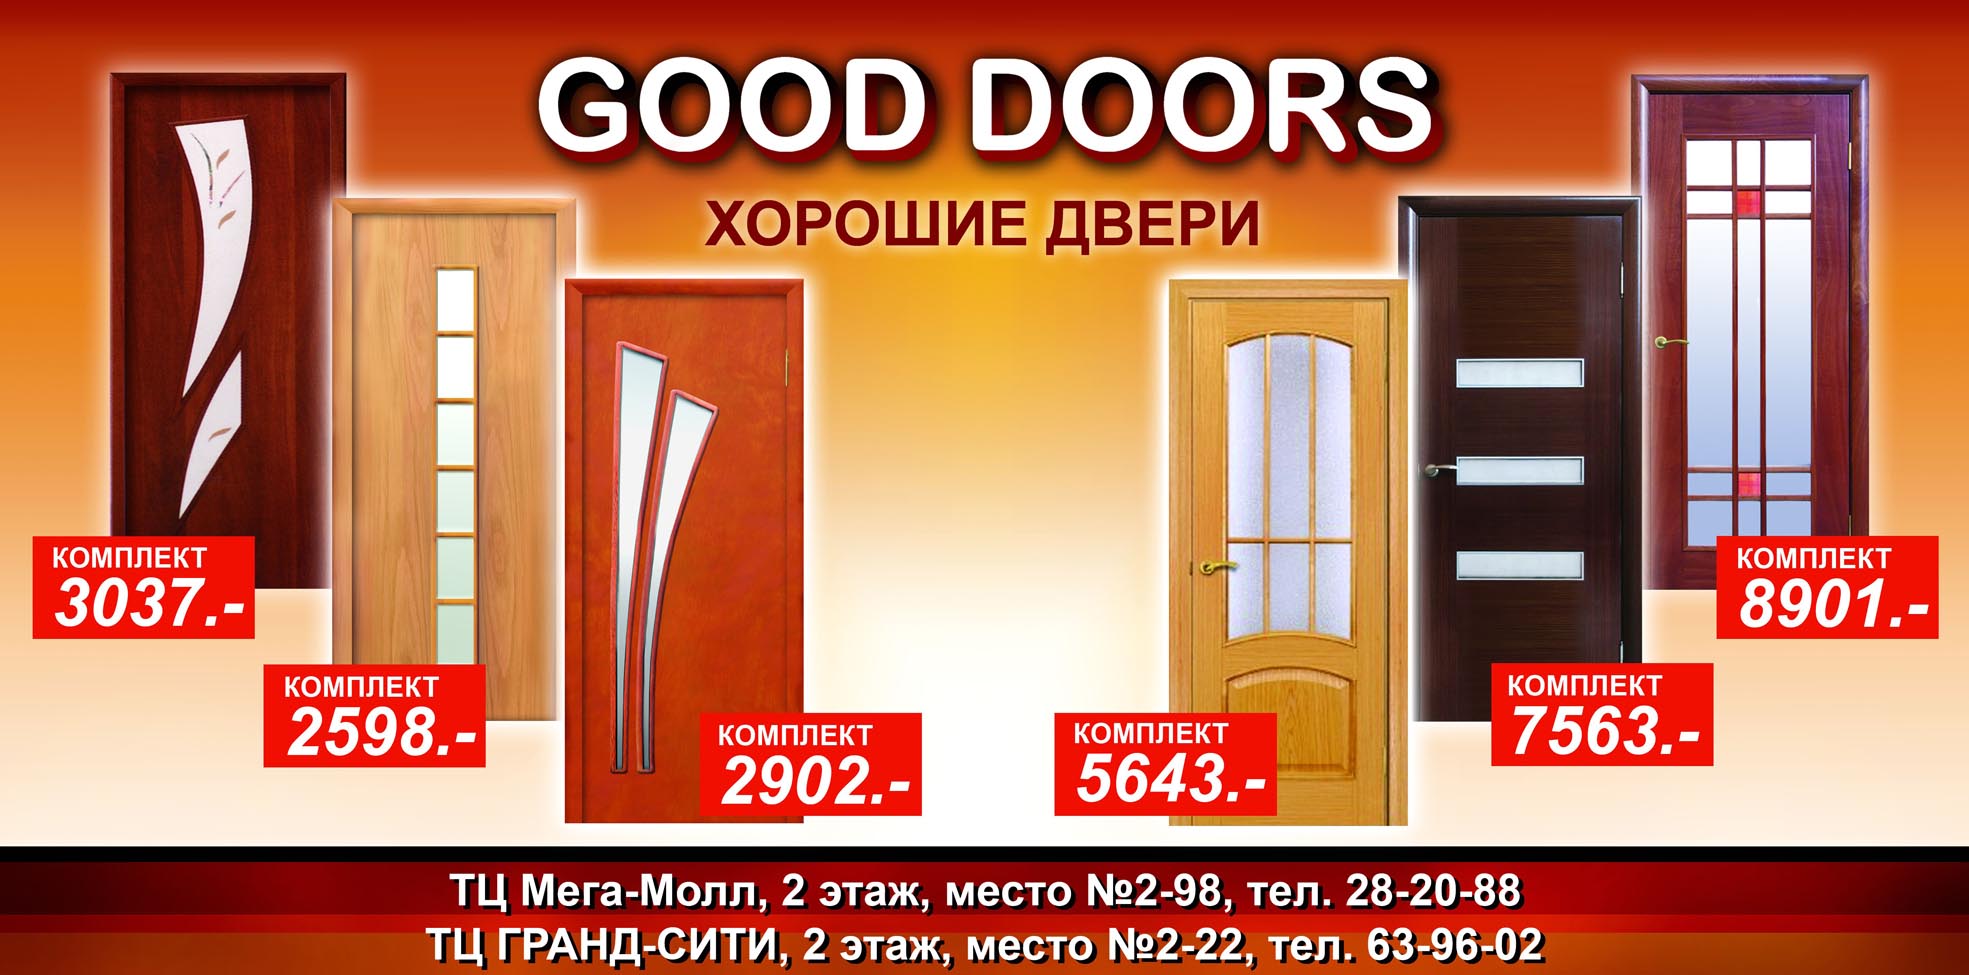 GOOD DOORS